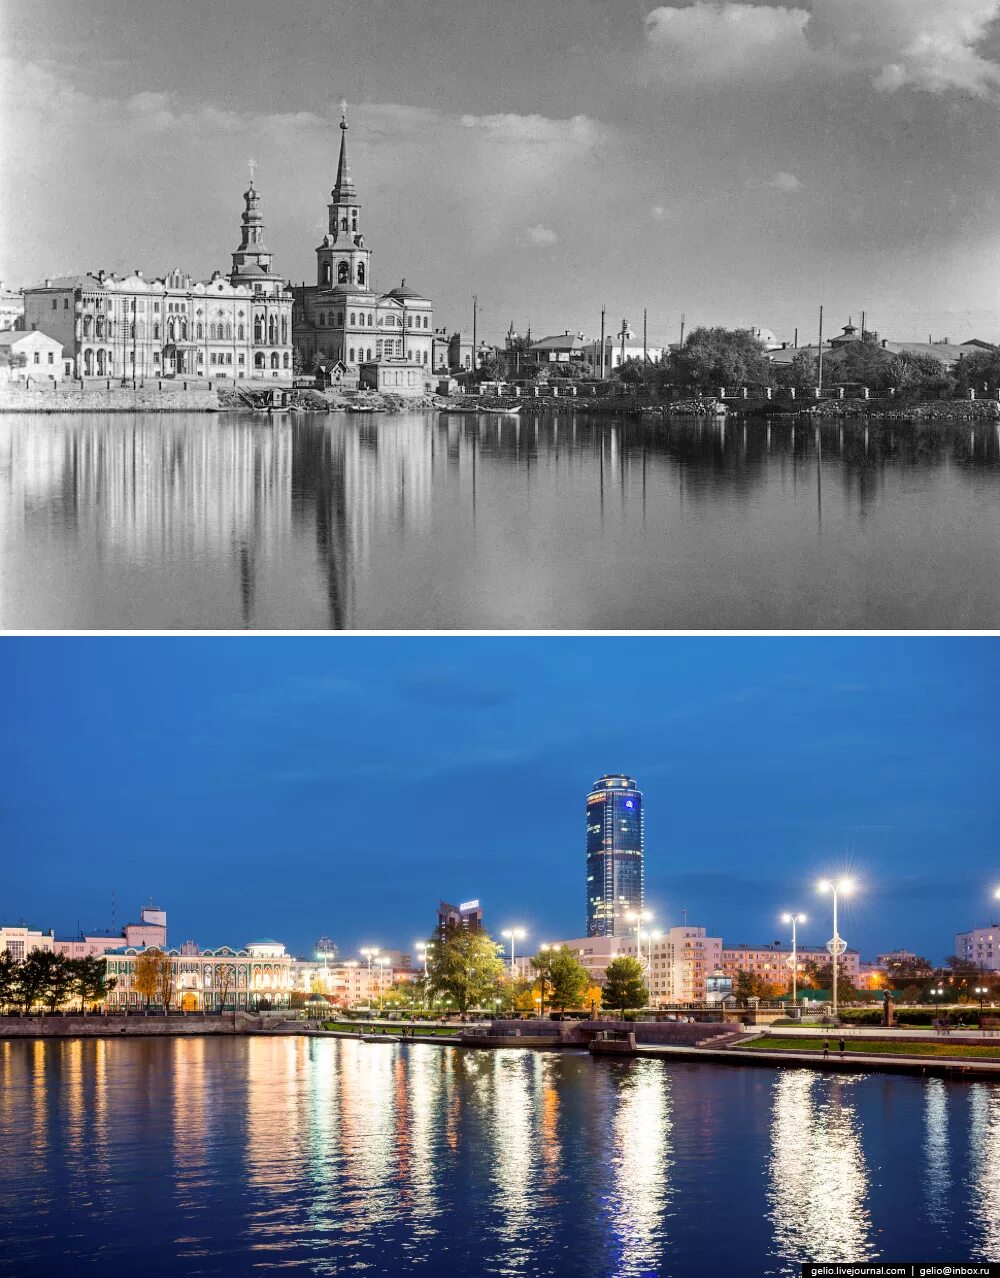 Окрестность раньше. Екатеринбург в прошлом и сейчас. Екатеринбург старый город. Екатеринбург тогда и сейчас. Фотографии новый и старый Екатеринбург.